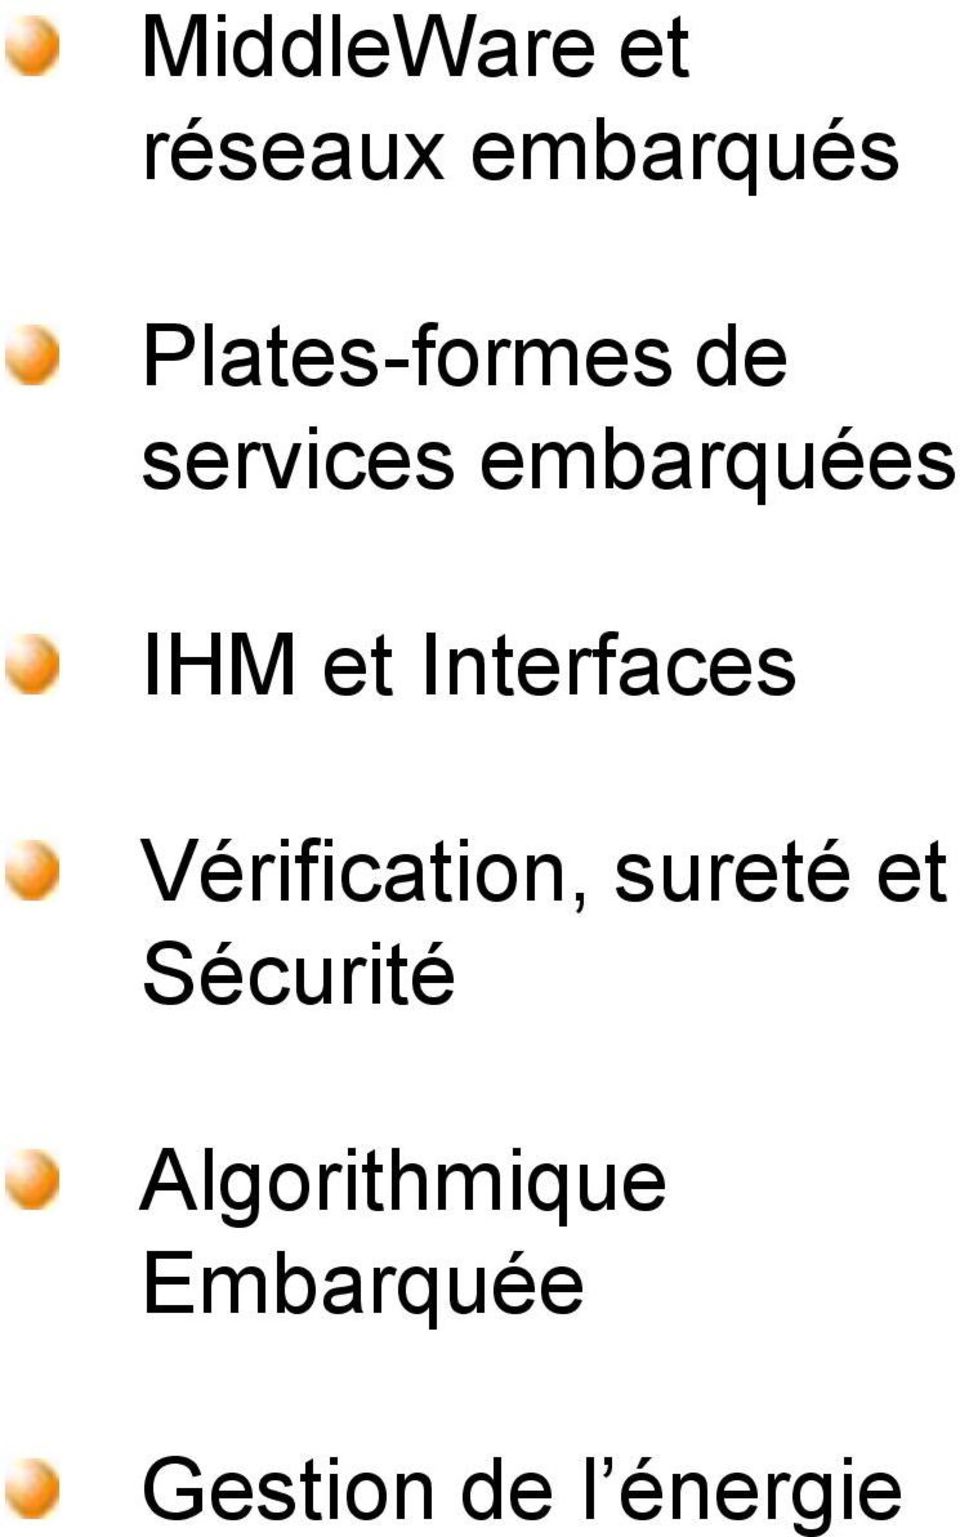 Plates-formes de services embarquées IHM et Interfaces